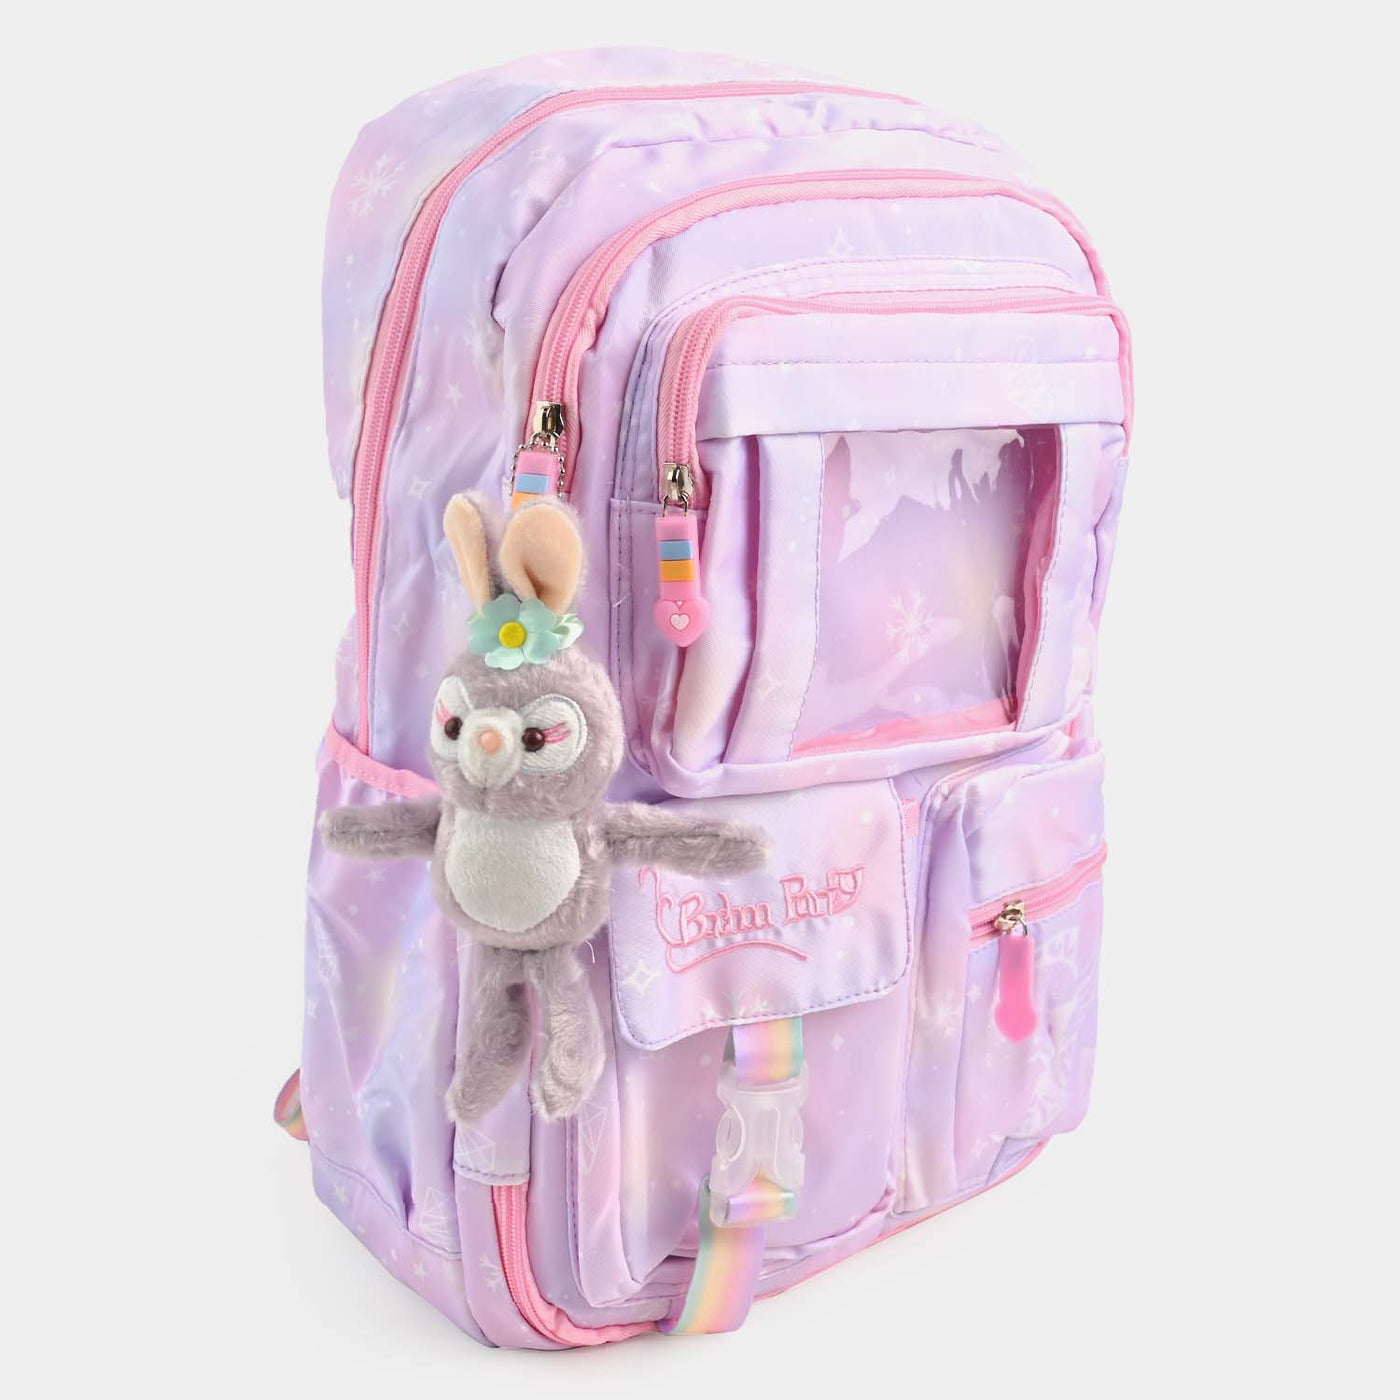 Cute kids Backpack/School Bag